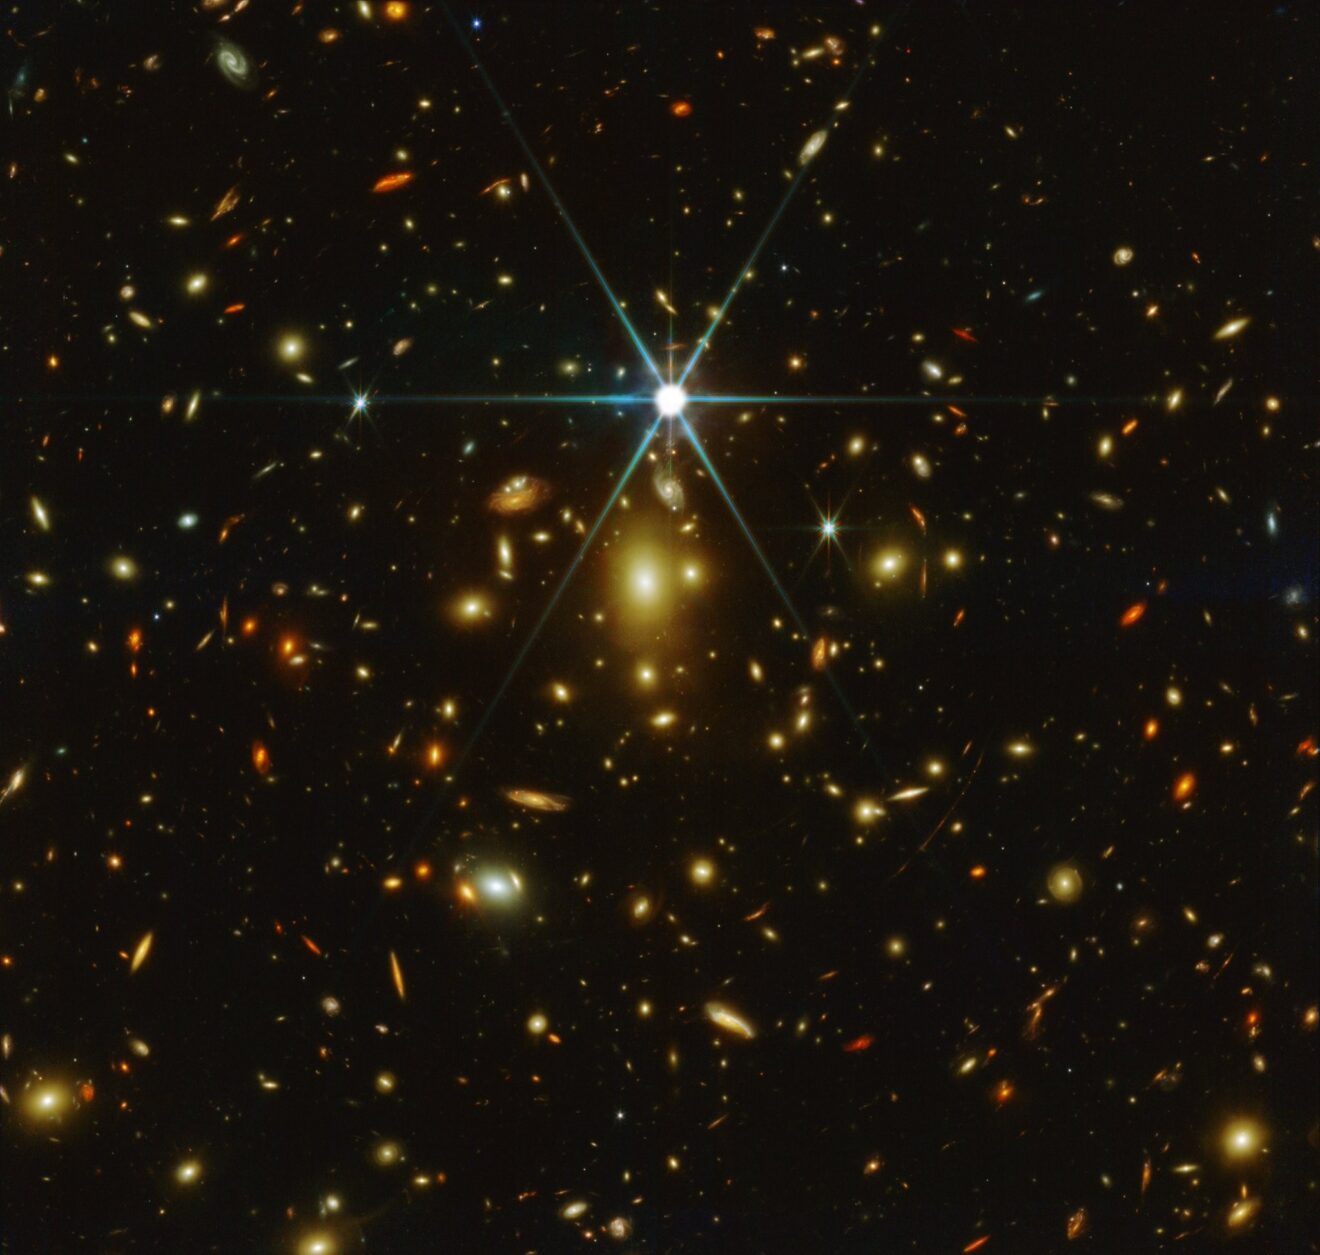 Earendel, de verste ster in het heelal ontdekt door Hubble, nu ook waargenomen door Webb